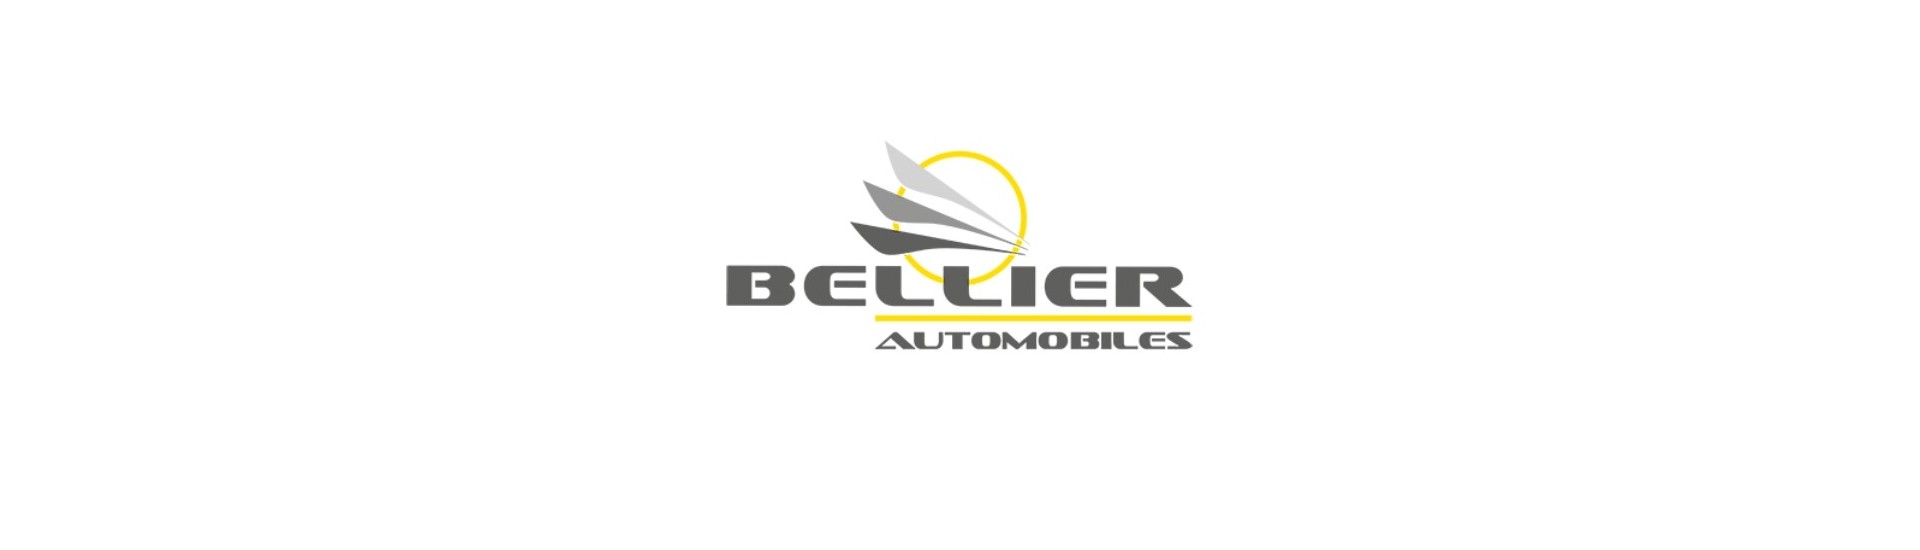 Cel mai bun preț pentru o mașină fără permis Bellier